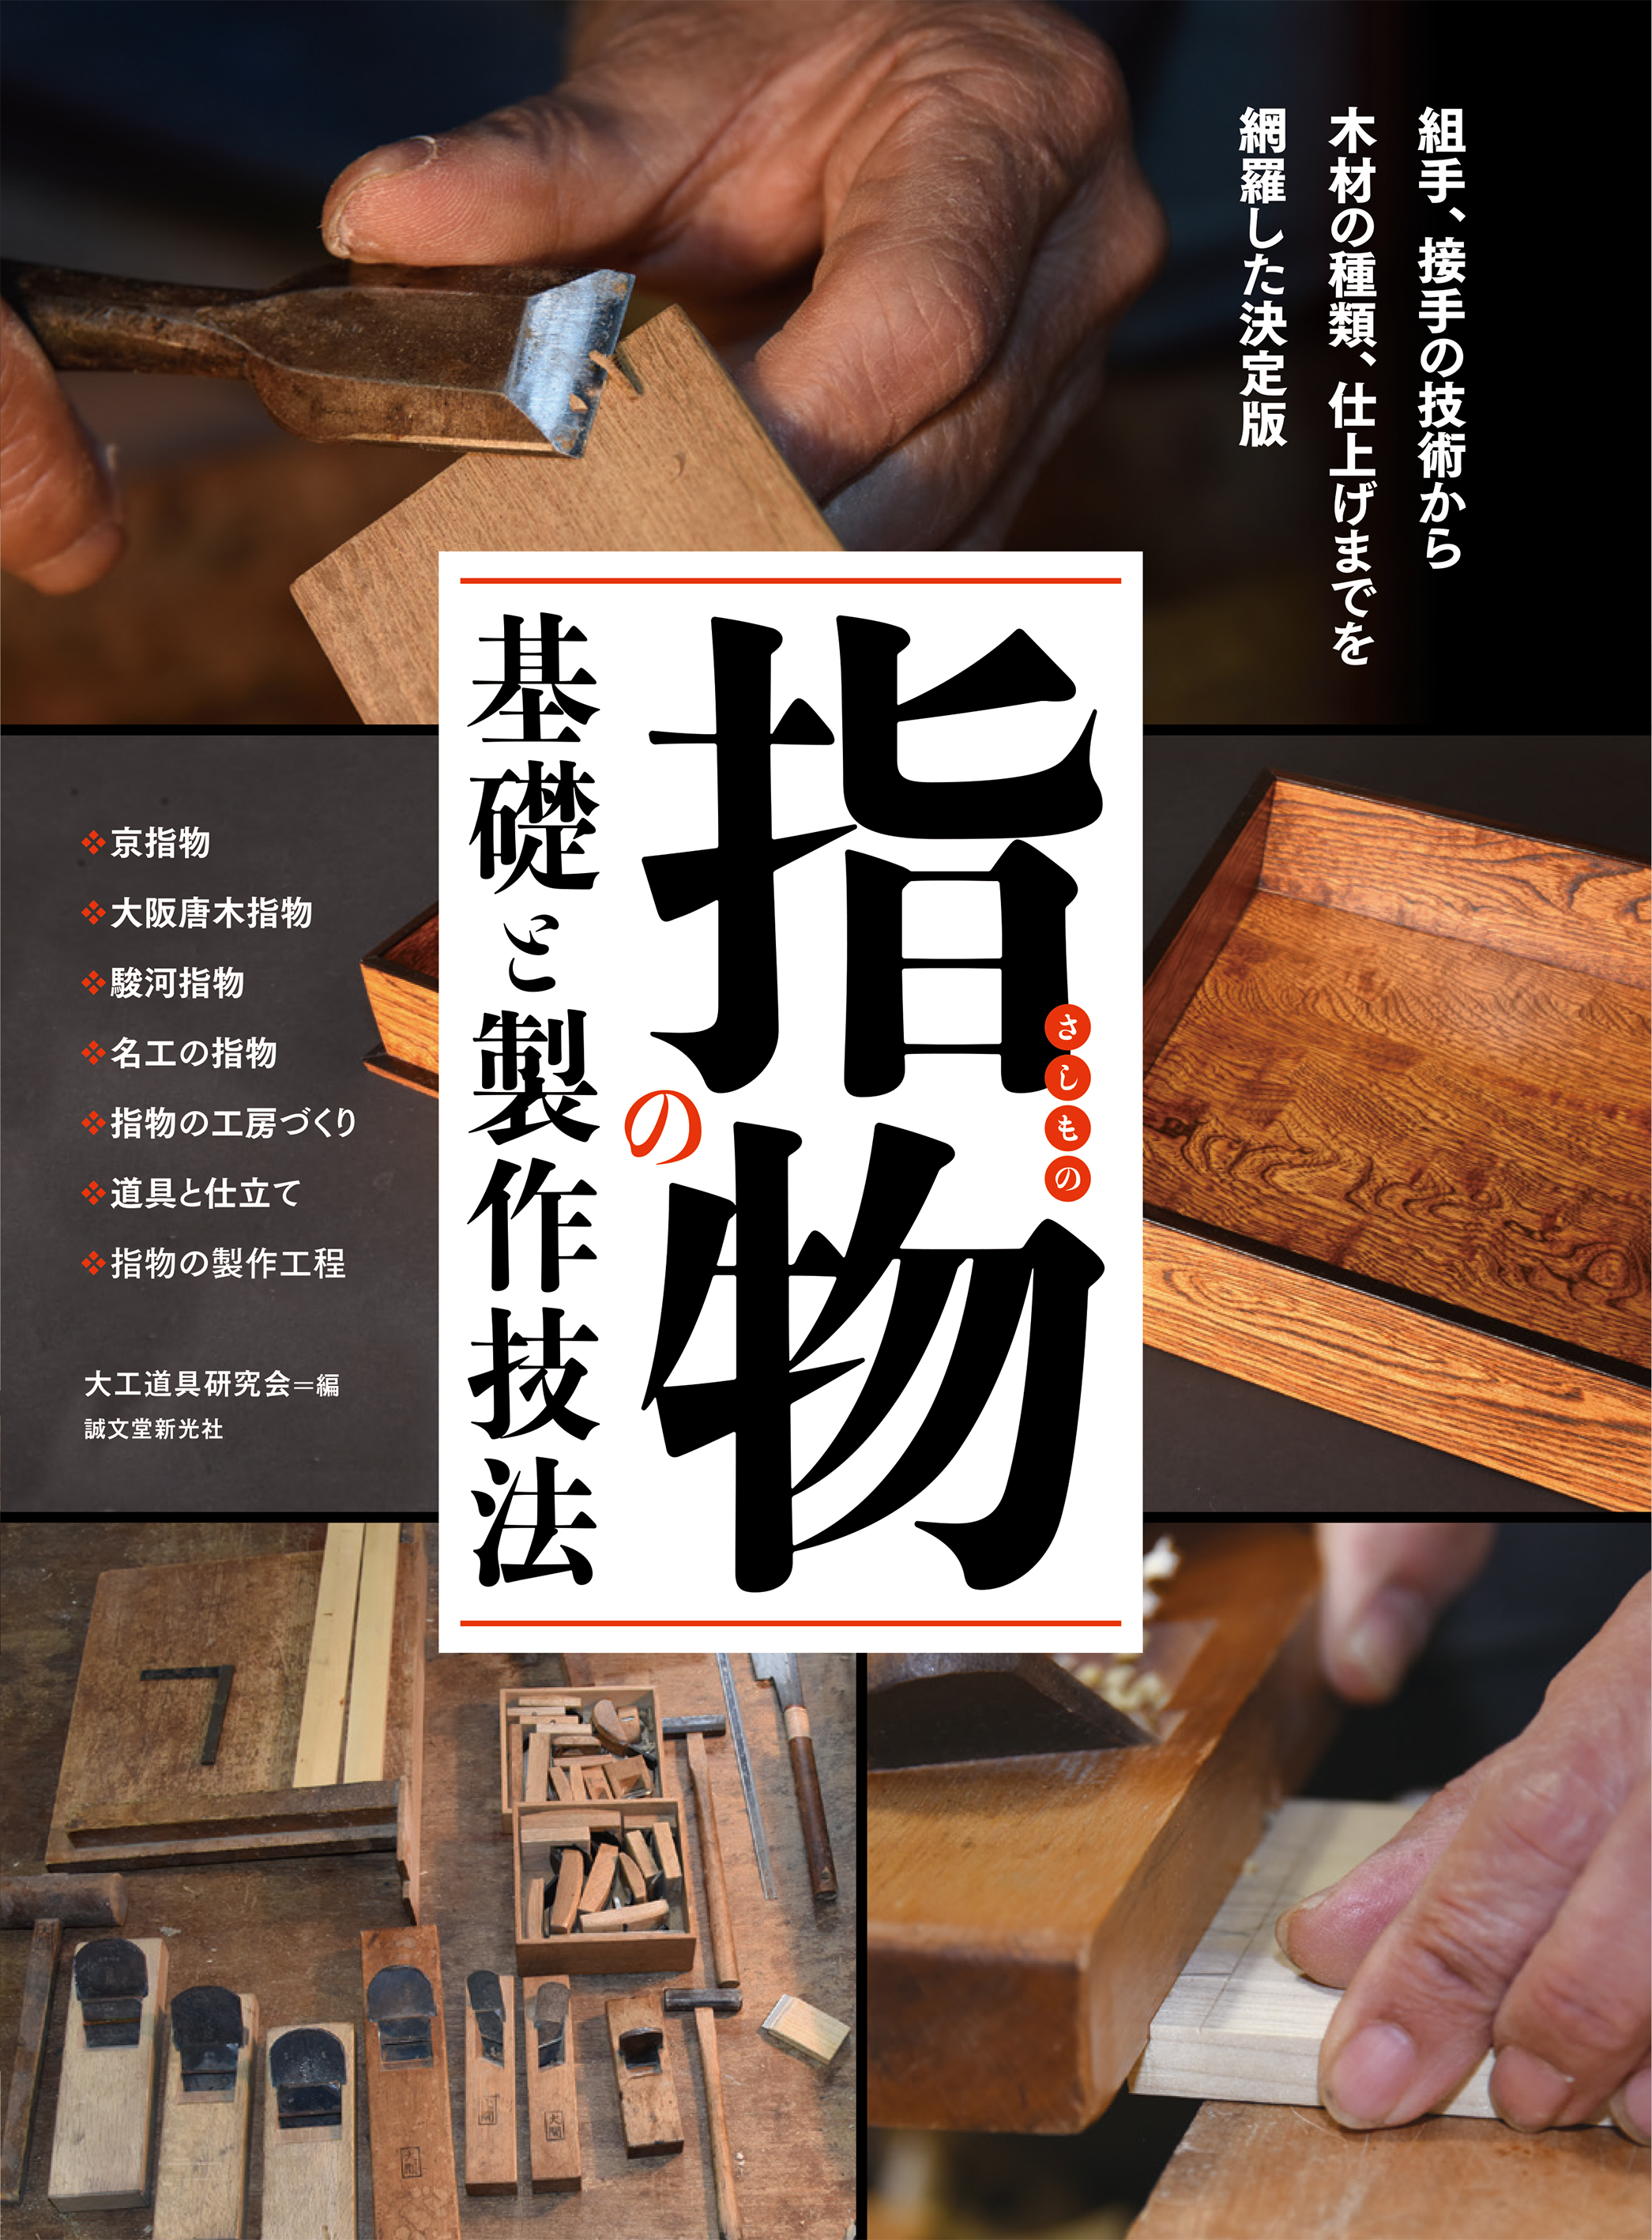 日本の伝統的な木工芸「指物（さしもの）」。釘などを一切使わず、木を組み合わせて作る、その接手の種類から製作技法、作例、使用する道具までを徹底 ...